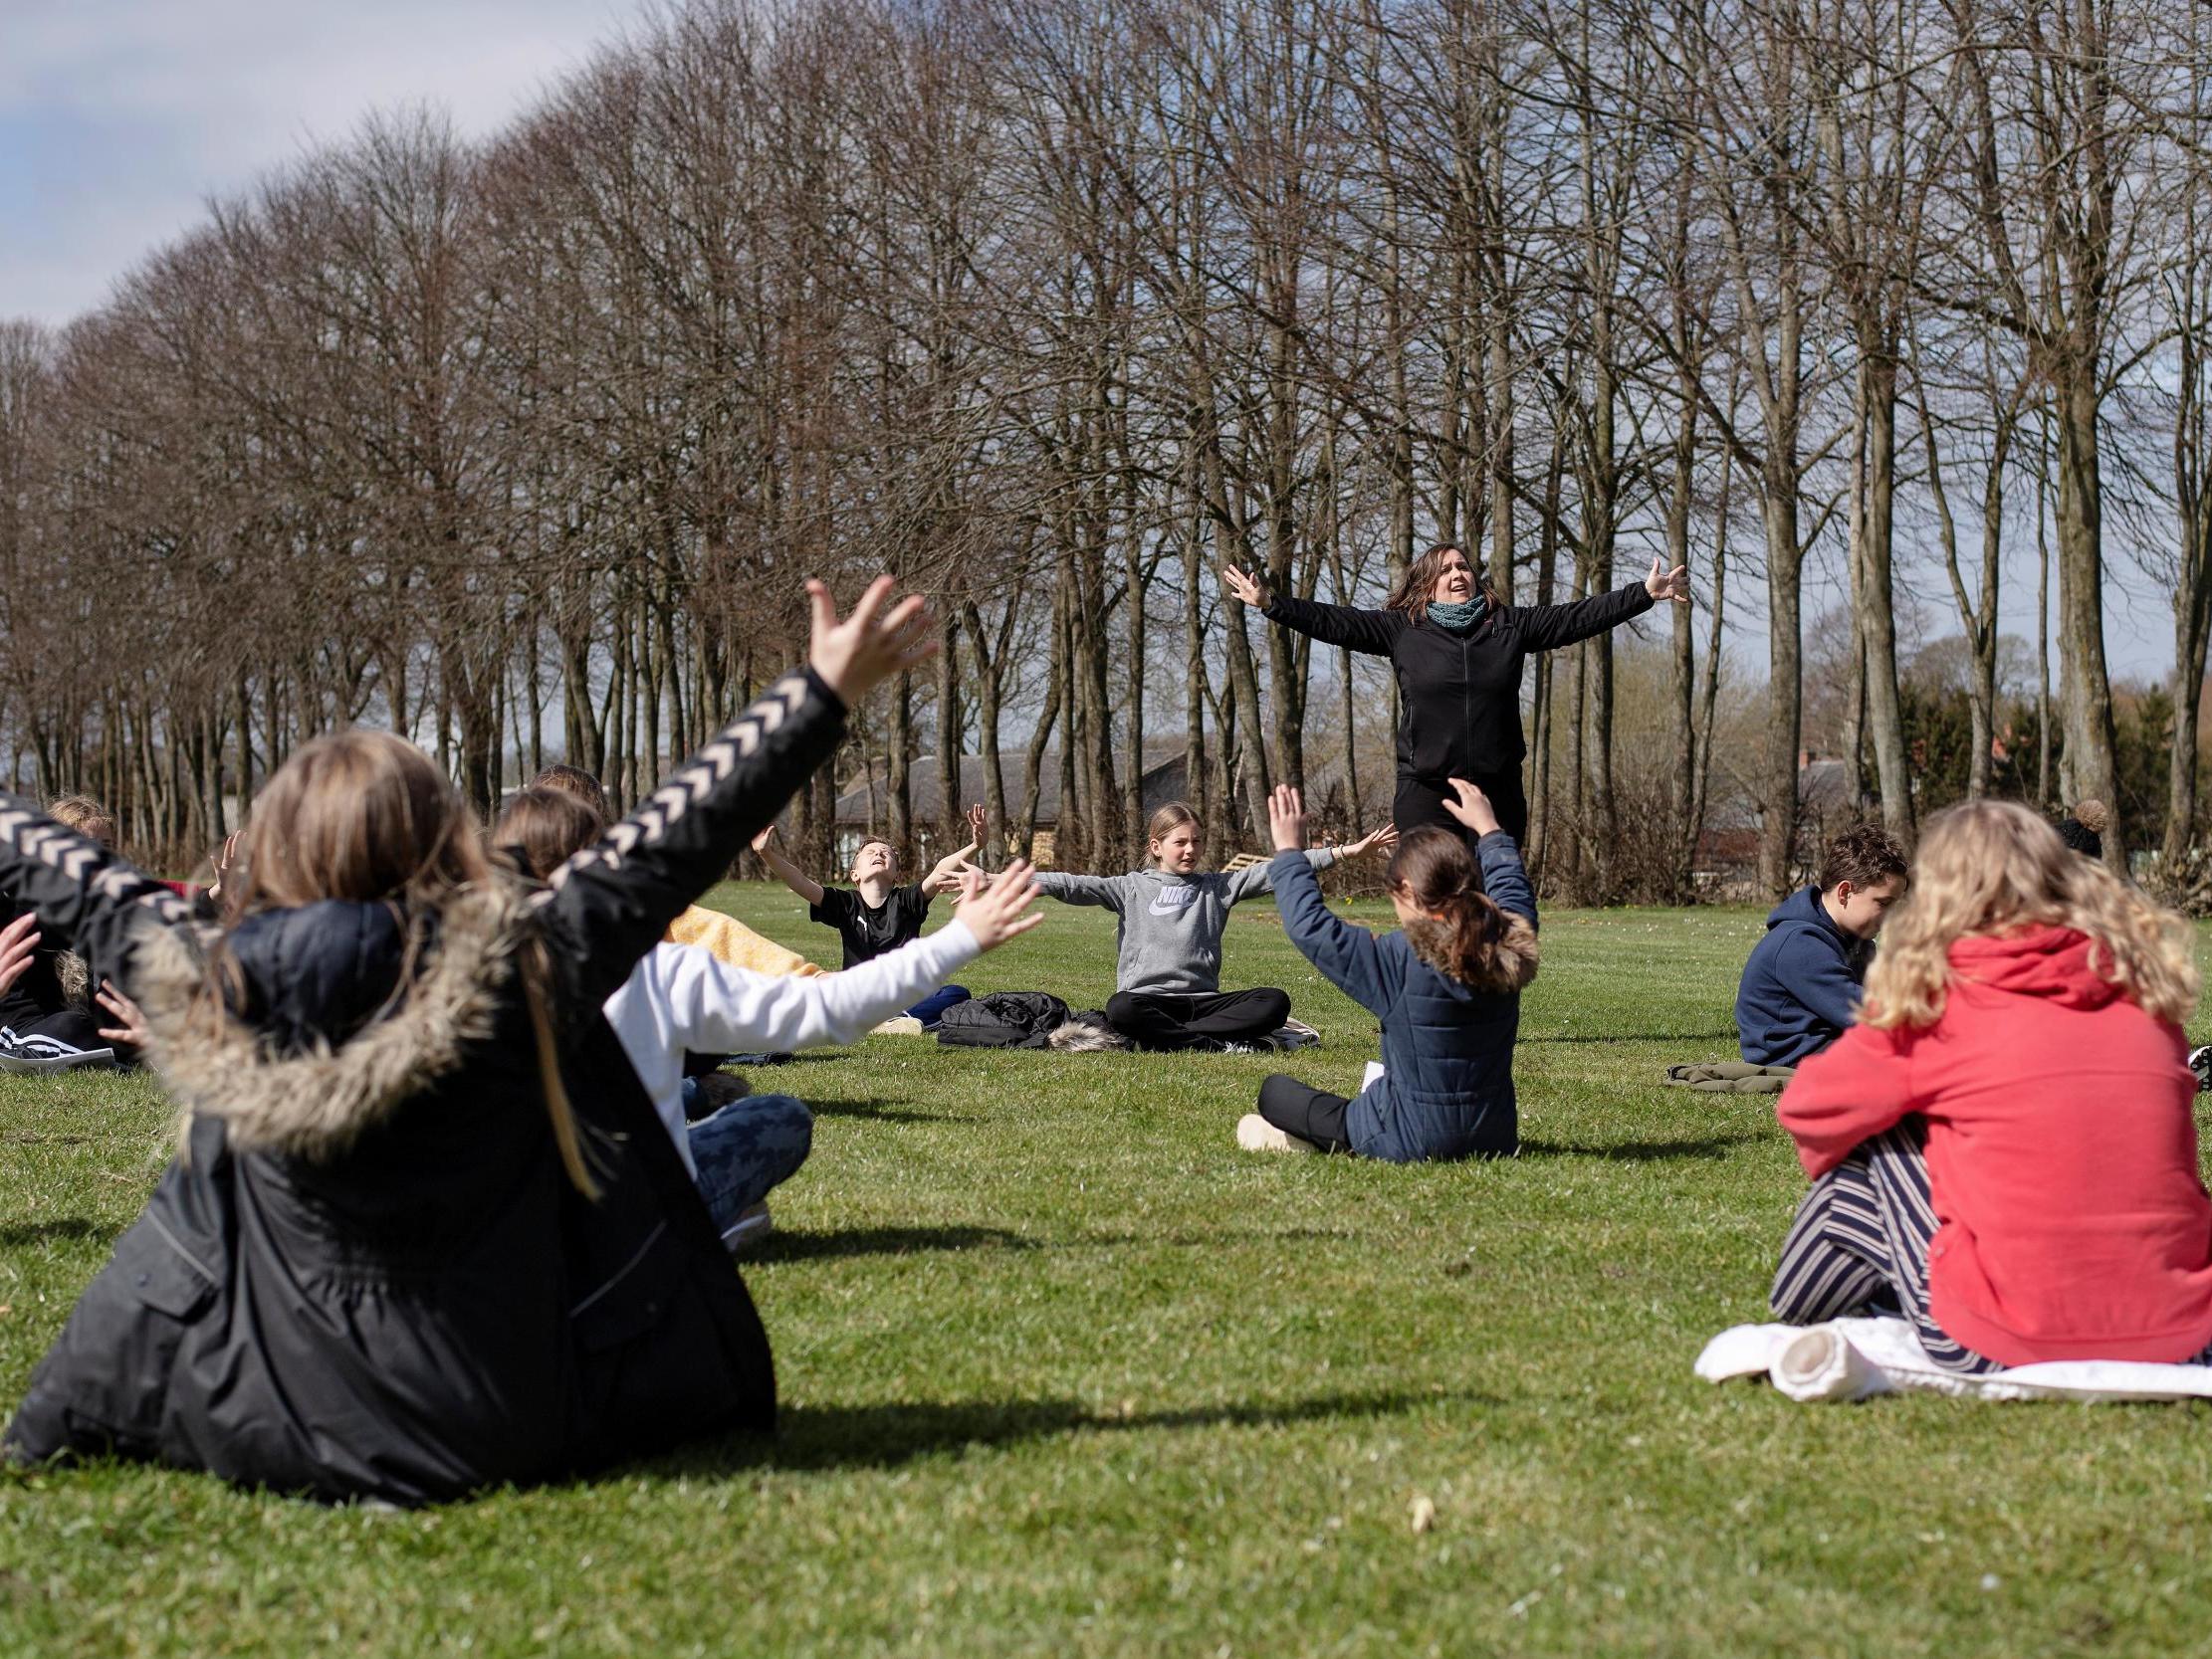 A music lesson is held outdoors at the Korshoejskolen school in Randers, Denmark